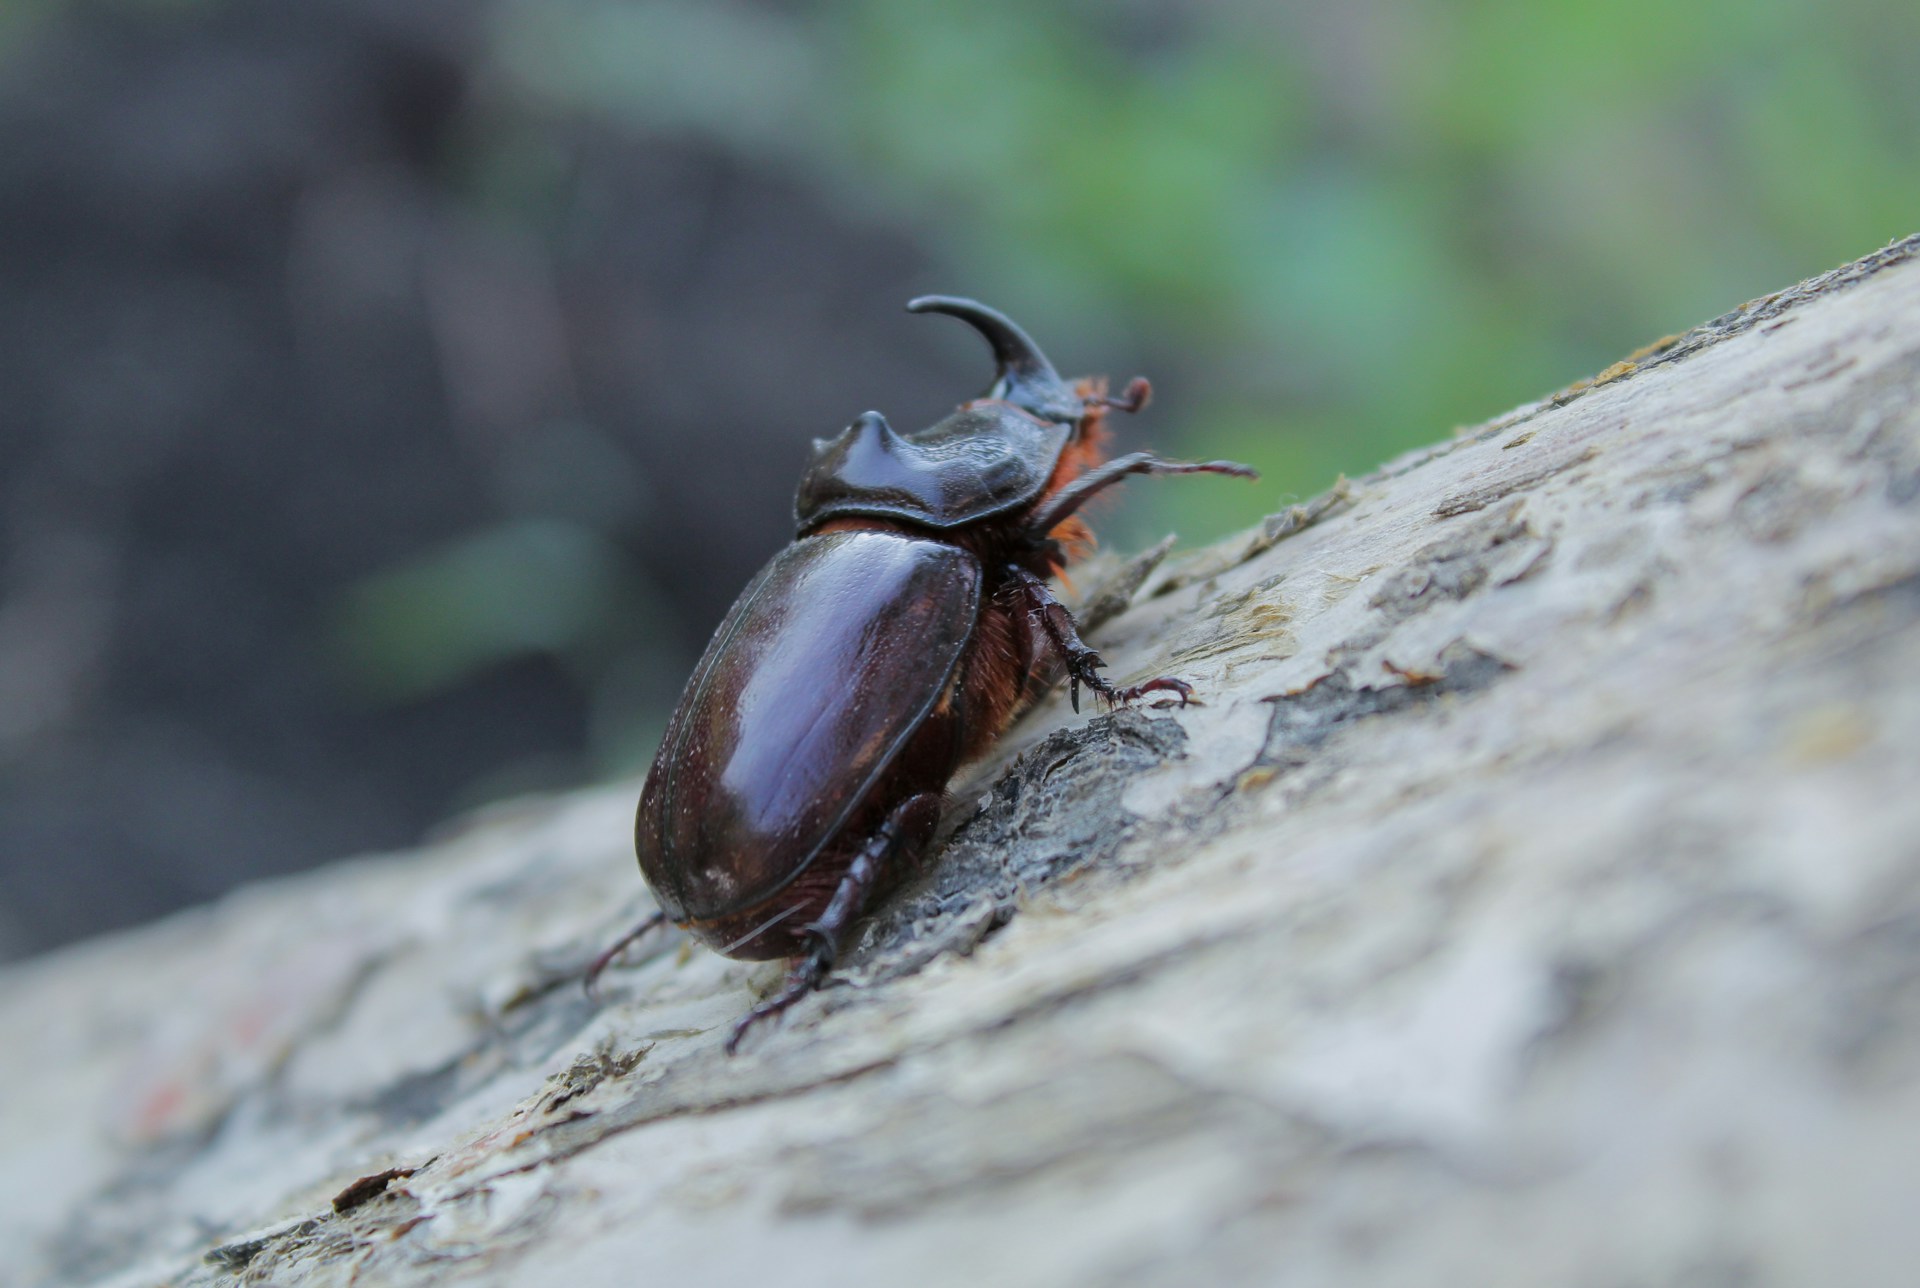 El escarabajo es un animal invertebrado. Fotografía por Maksim Koshkin.